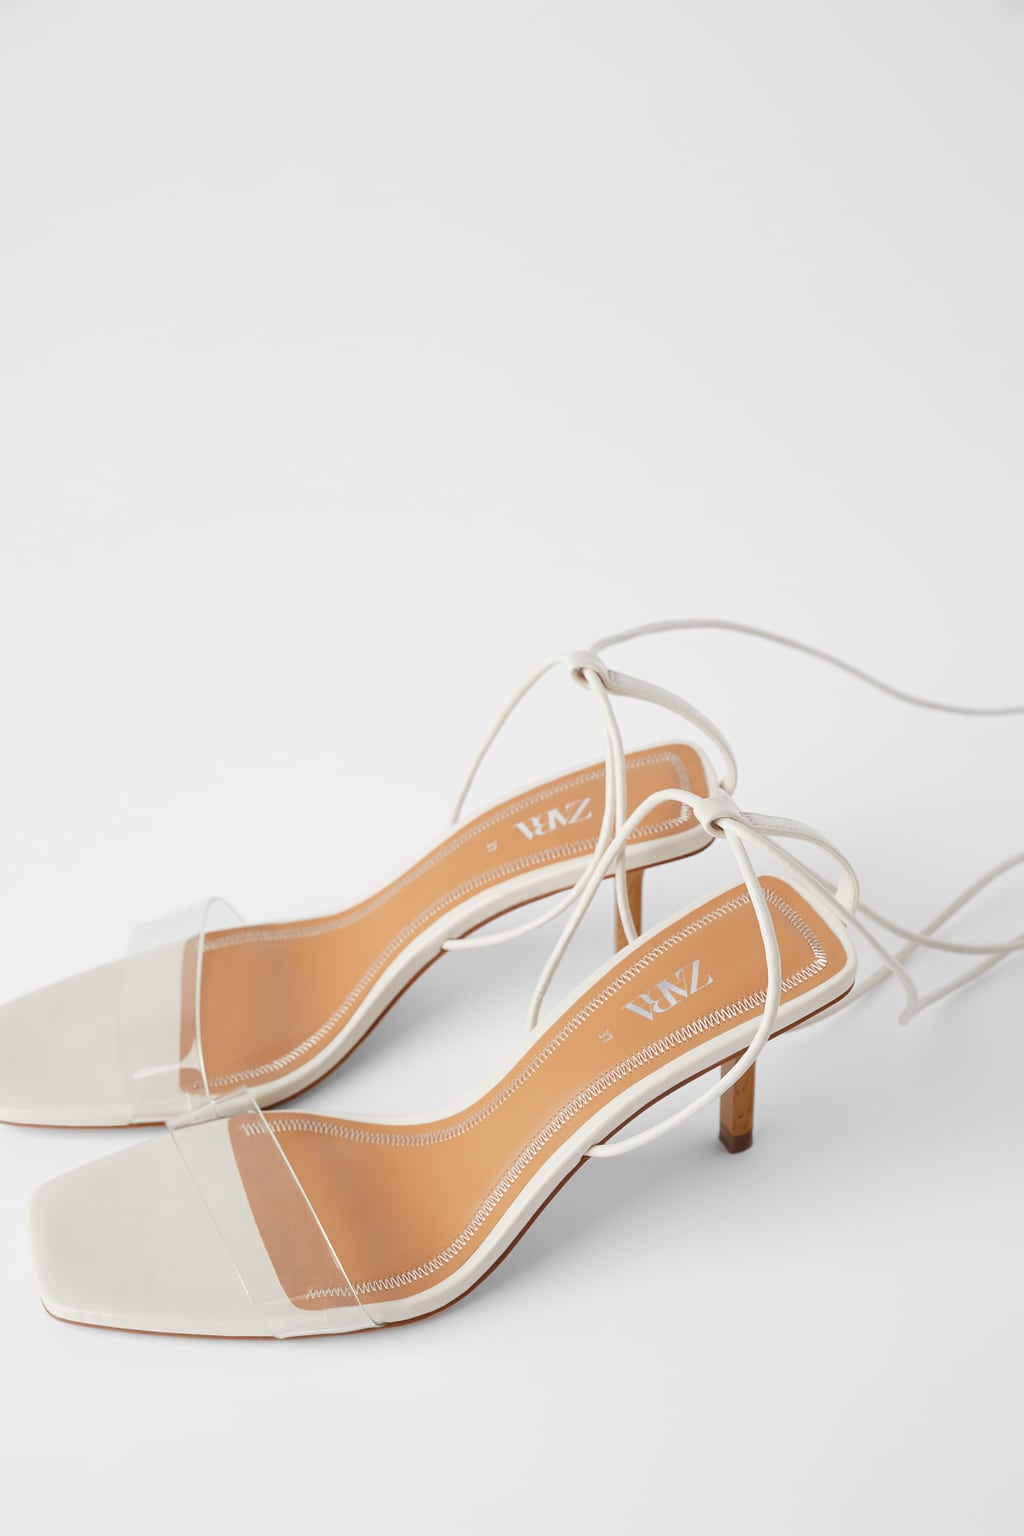 zara white sandal heels